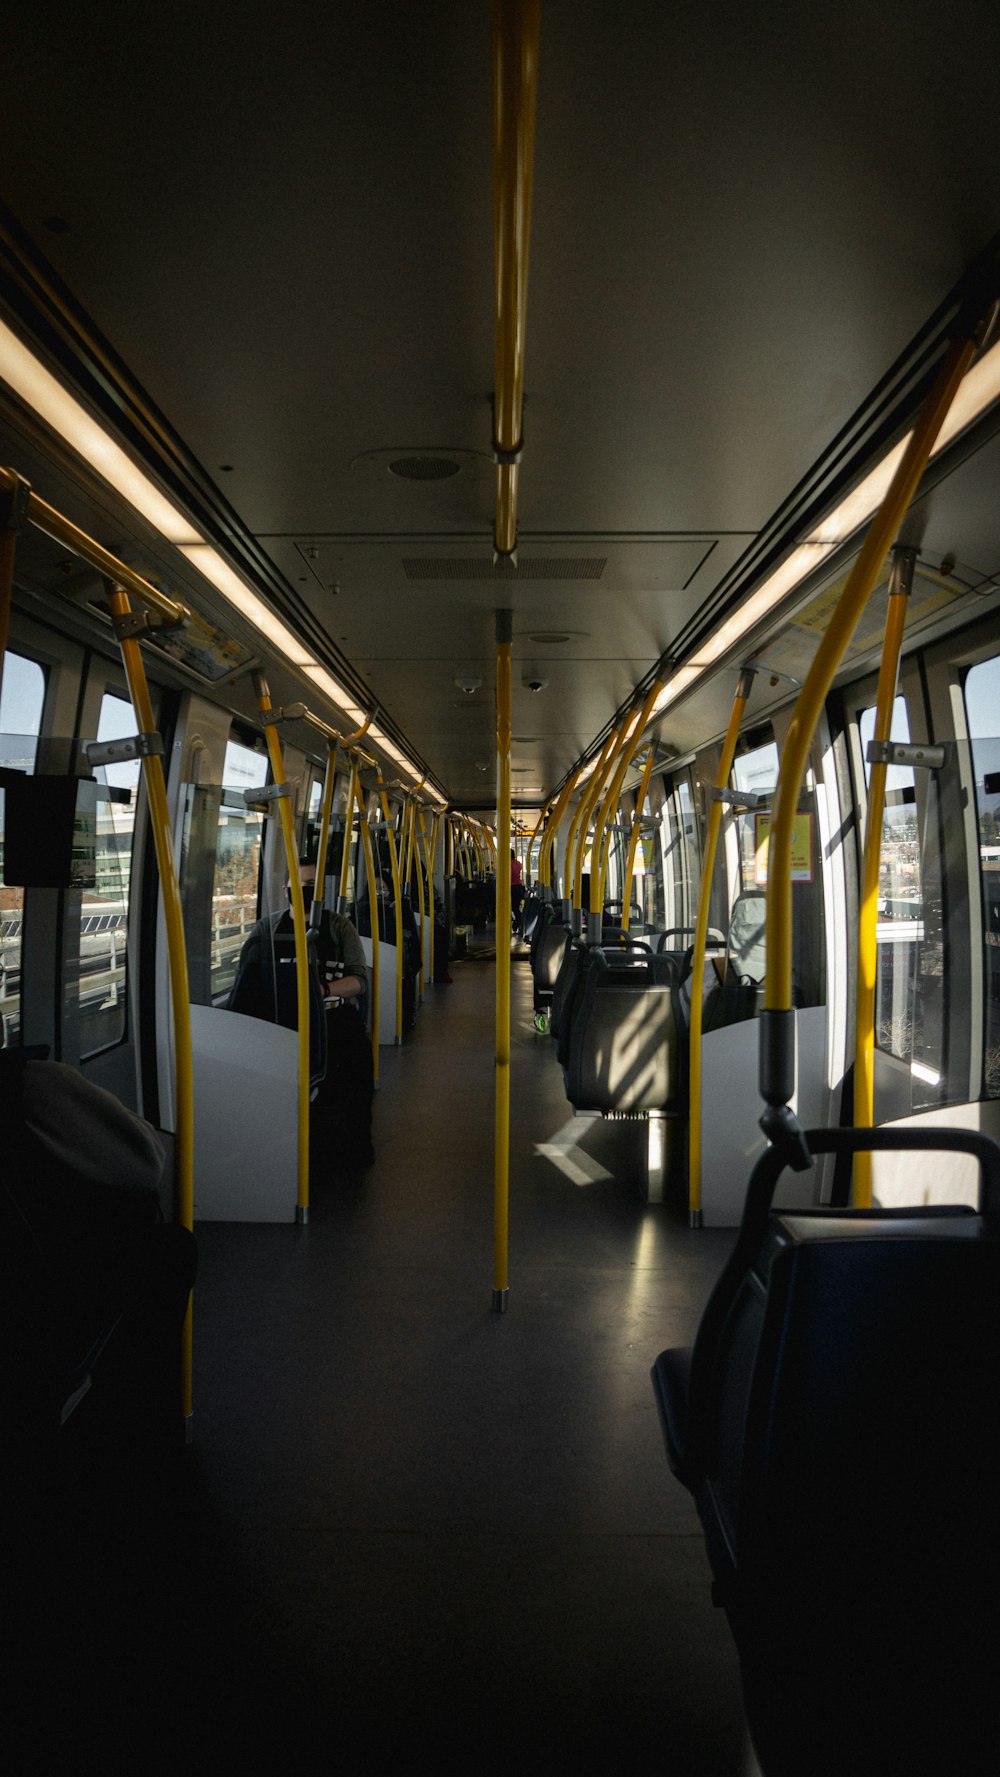 black and white train interior